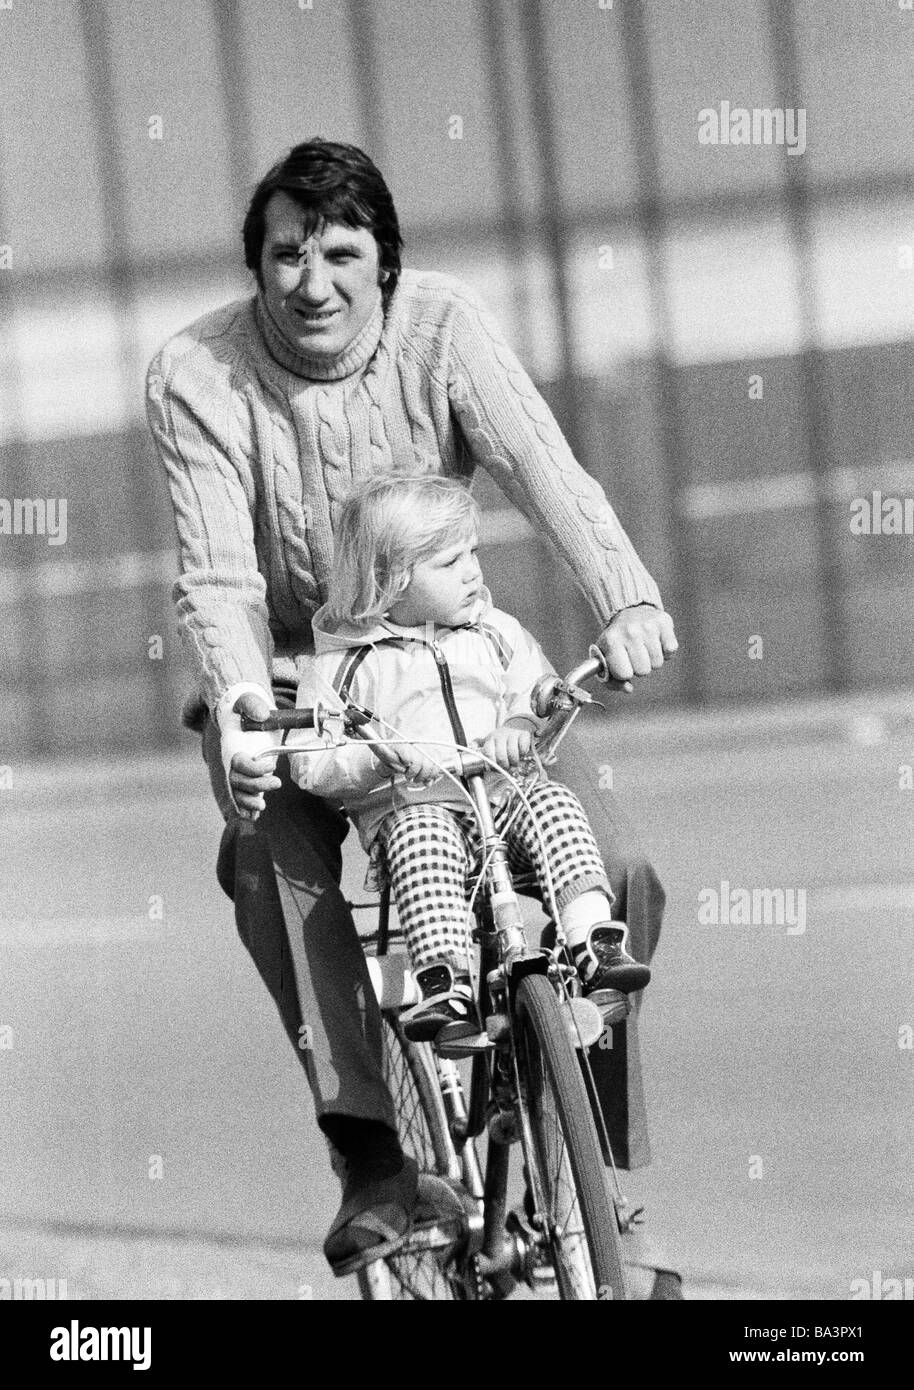 Années 70, photo en noir et blanc, le trafic routier, freetime, jeune homme va sur un voyage en vélo avec sa petite fille, âgée de 25 à 35 ans, de 2 à 4 ans Banque D'Images